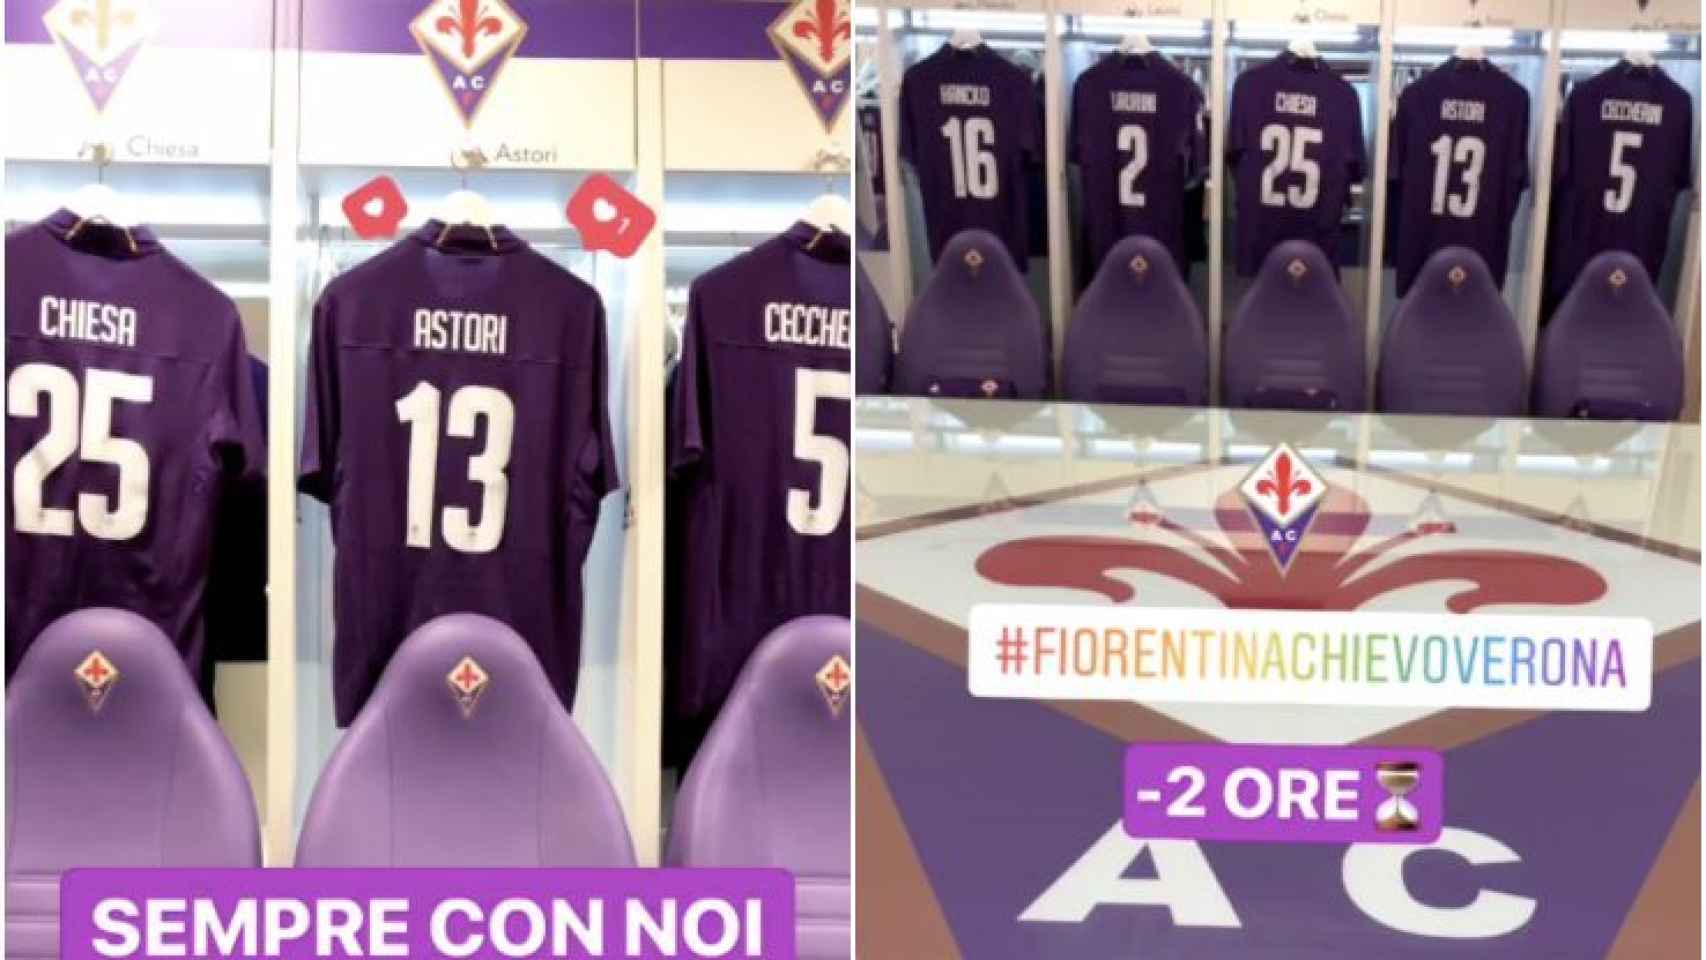 El homenaje de la Fiorentina a Astori.